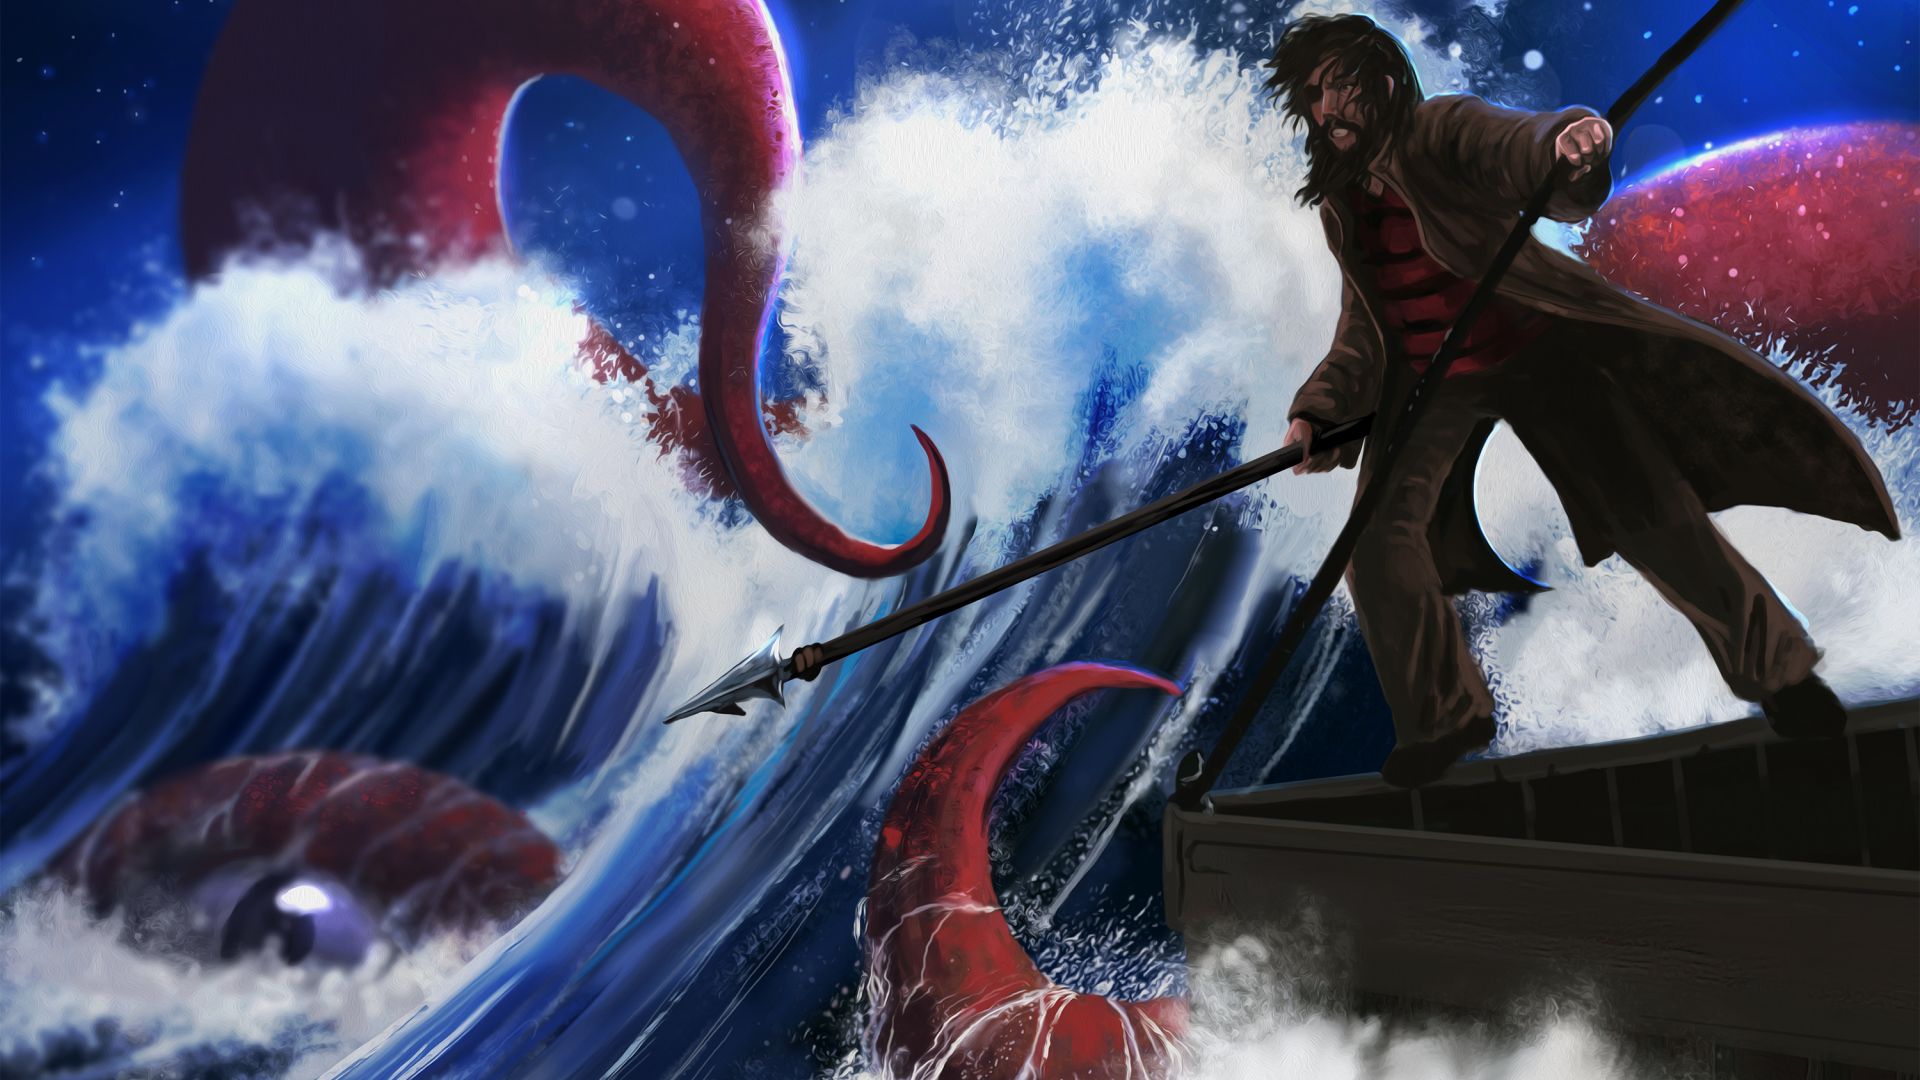 Wallpaper Fantasy, sea monster